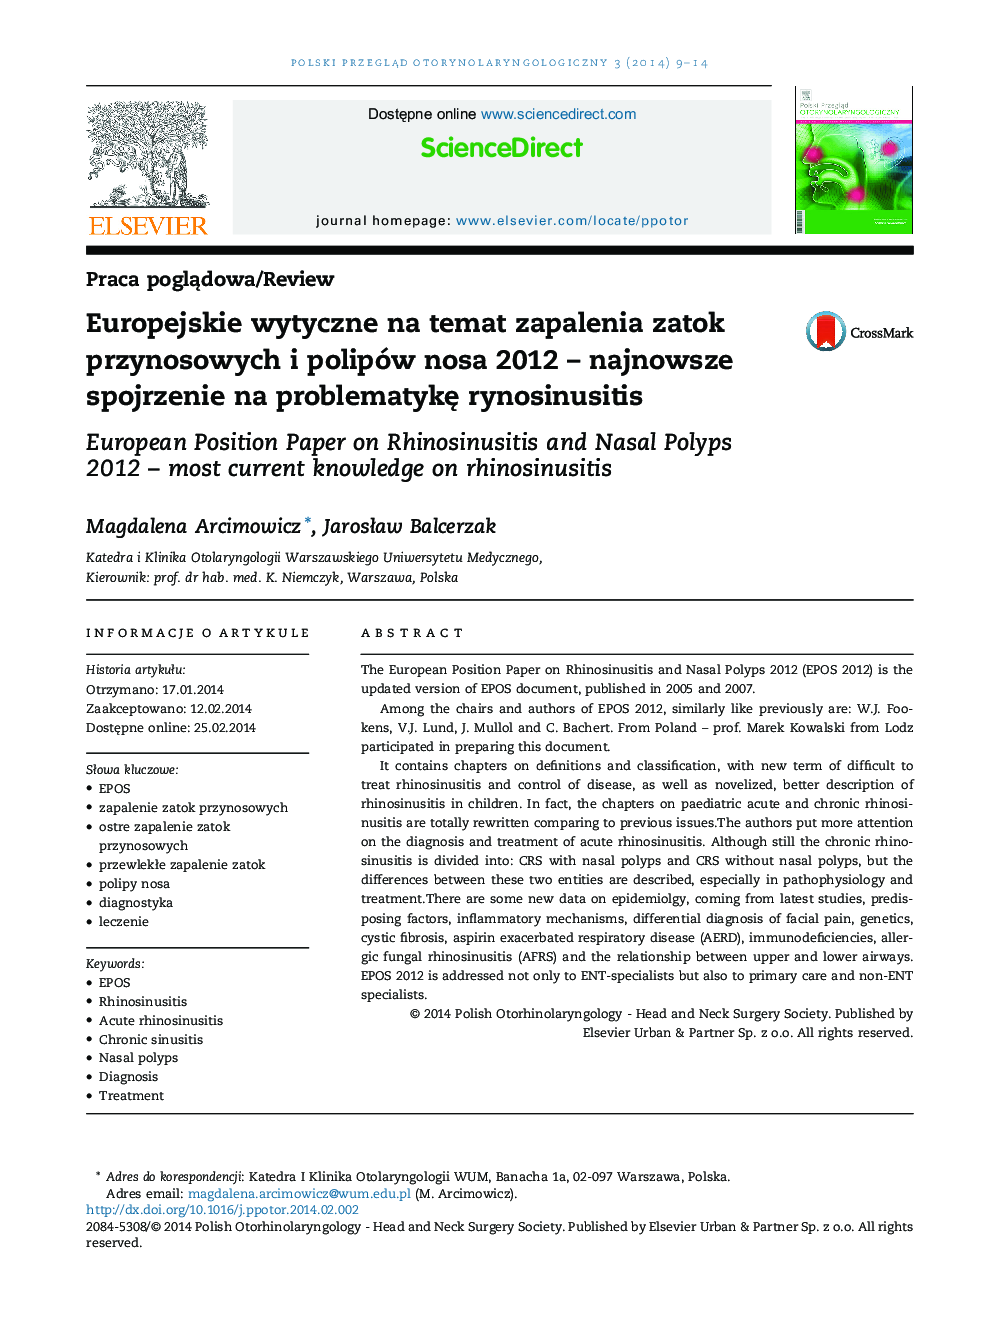 Europejskie wytyczne na temat zapalenia zatok przynosowych i polipów nosa 2012 - najnowsze spojrzenie na problematykÄ rynosinusitis